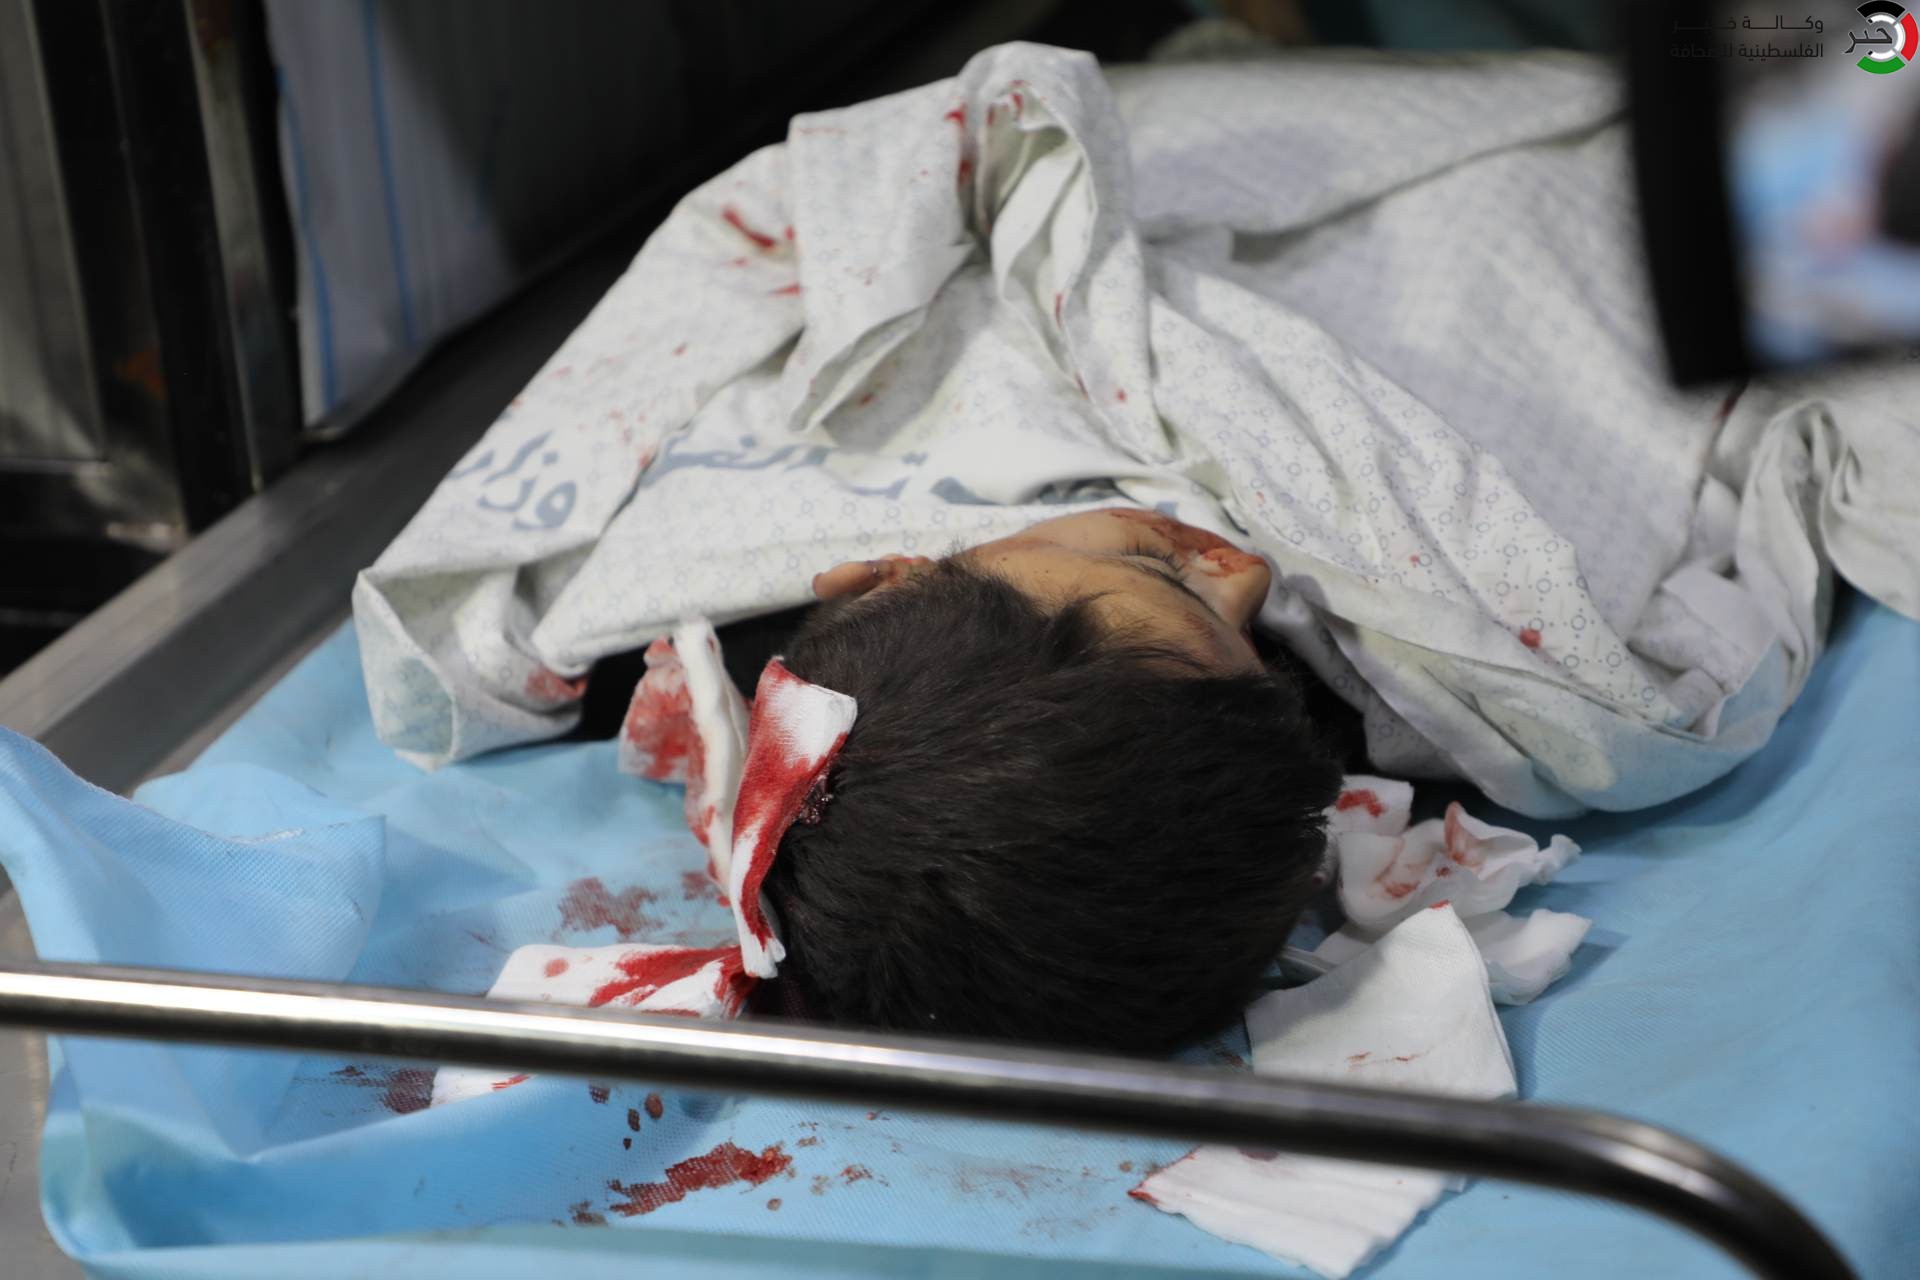 فيديو وصور: 13 شهيداً وعشرات الإصابات في قصف "إسرائيلي" استهدف منازل مدنية بغزّة